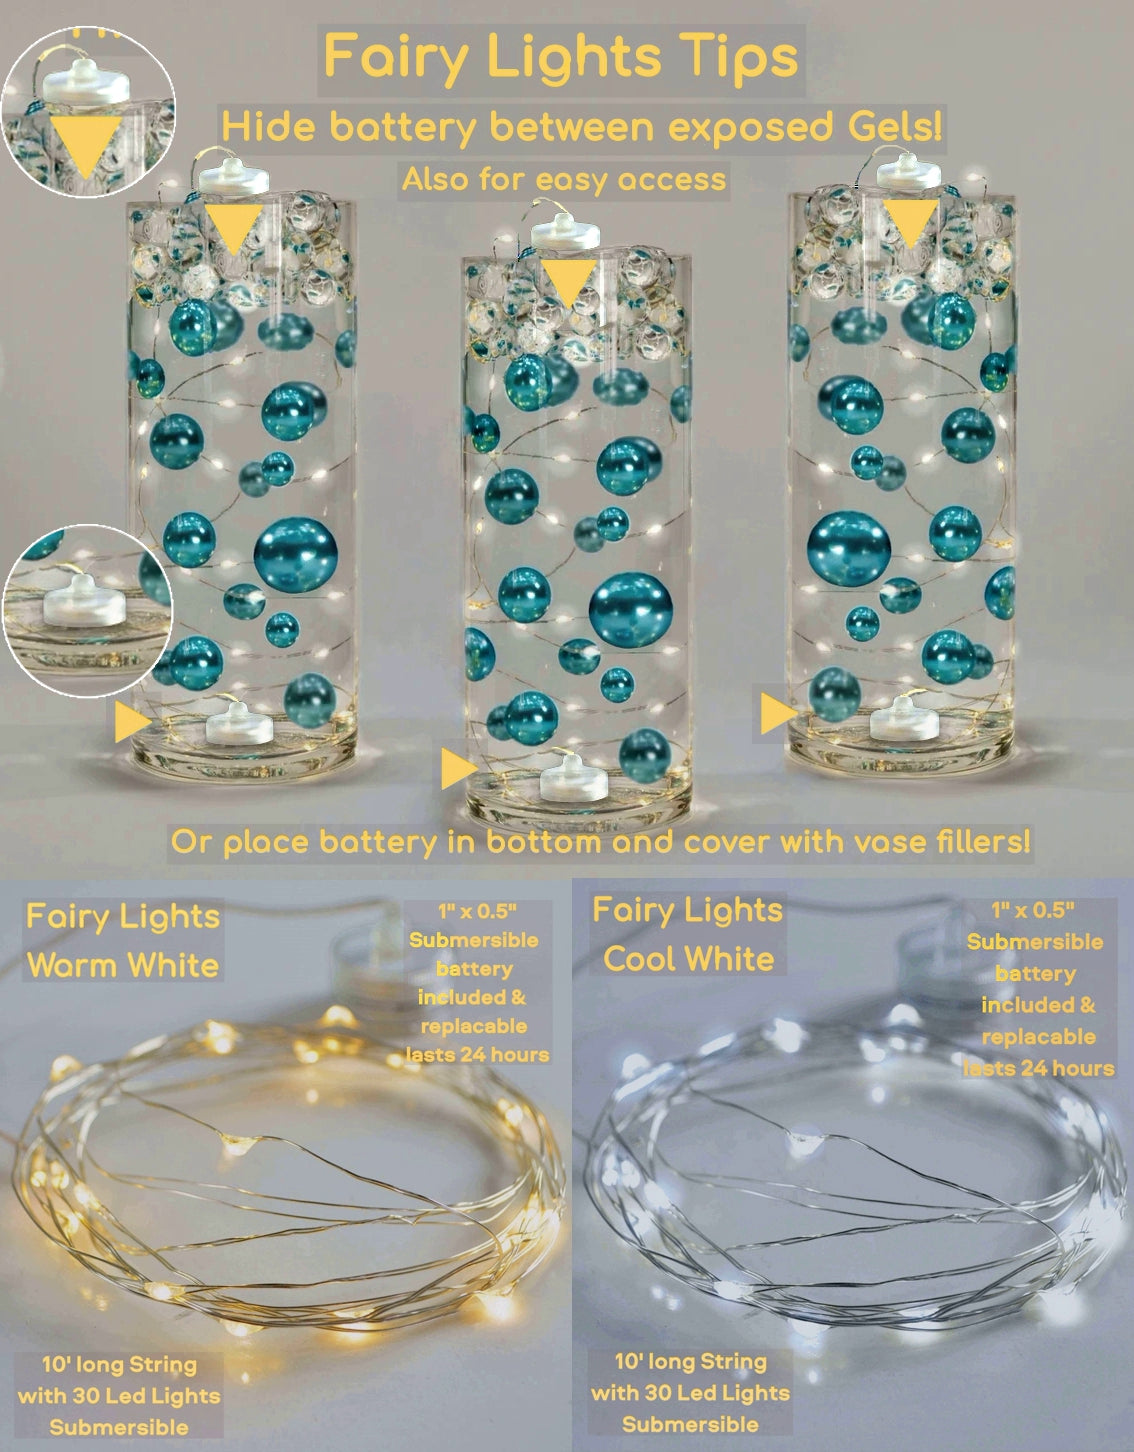 120 schwebende Perlen in Elfenbein und Weiß mit Edelsteinakzenten – ohne Loch Jumbo/verschiedene Größen Vasendekorationen und Tischstreuer